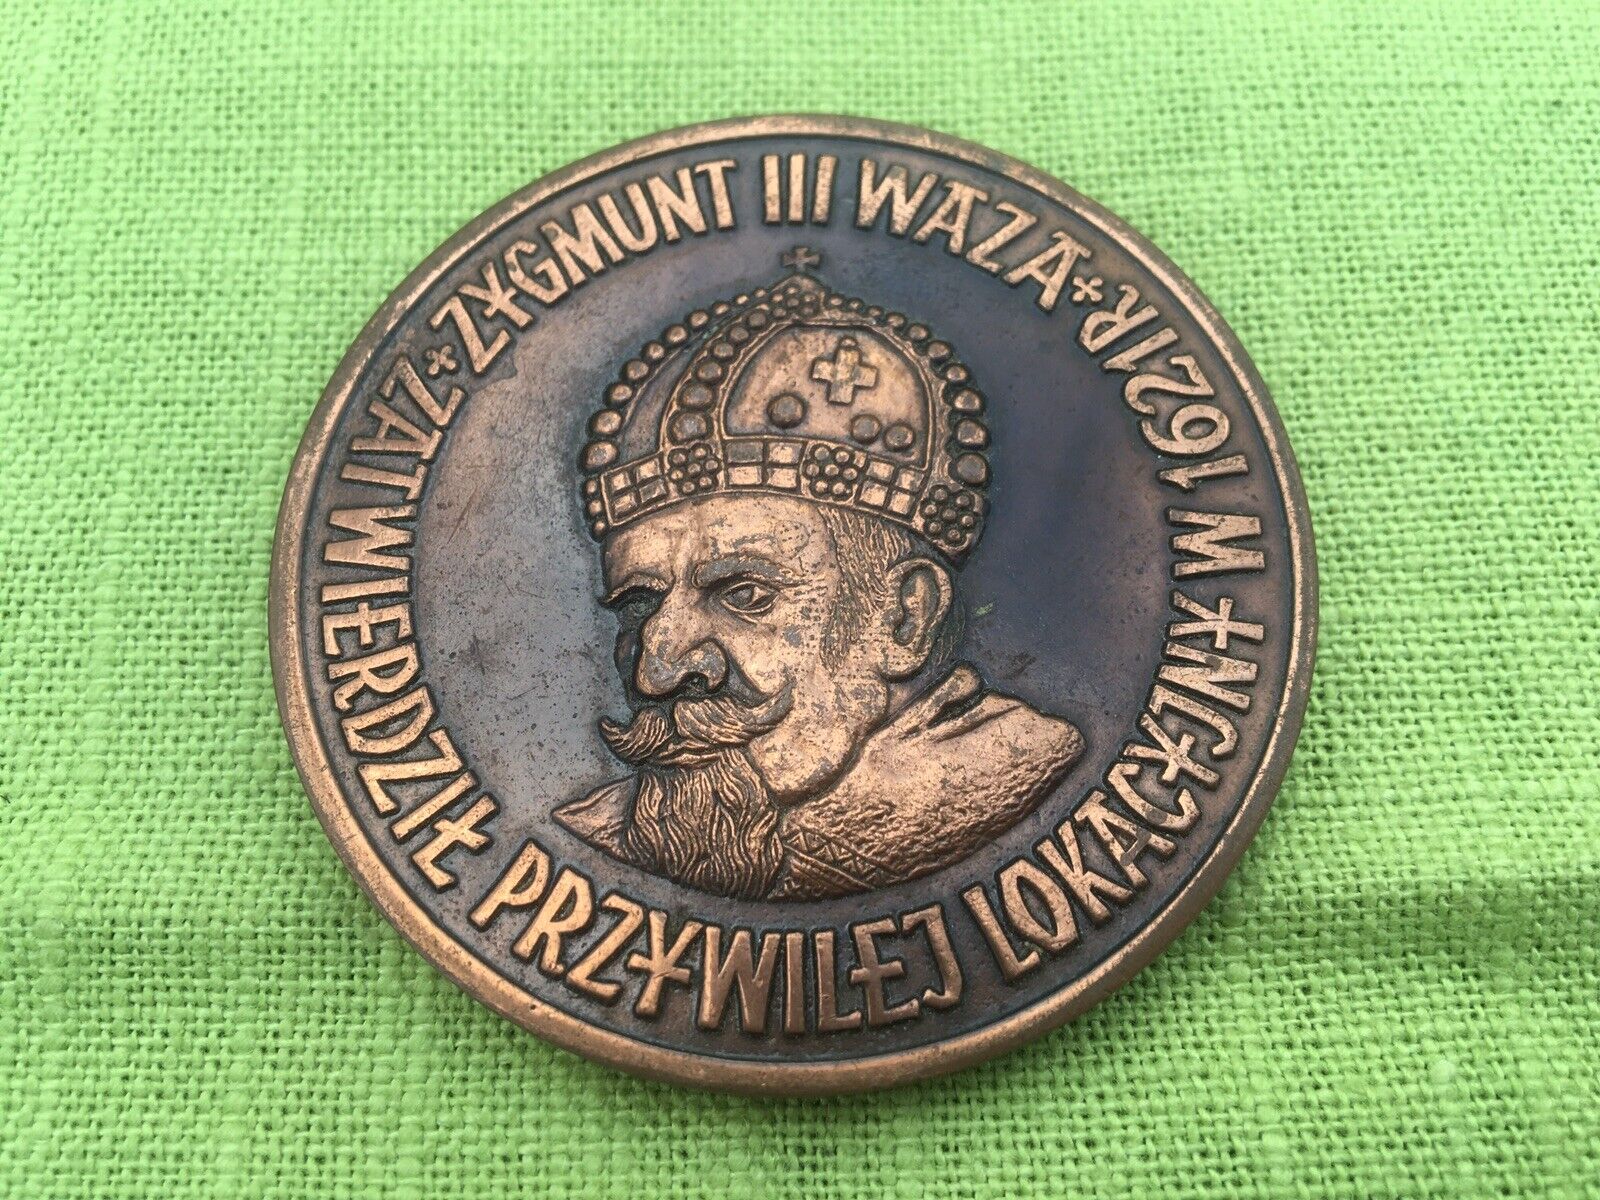 Vintage Commemorative medal King Siezmund 3 Poland 1621- 1986